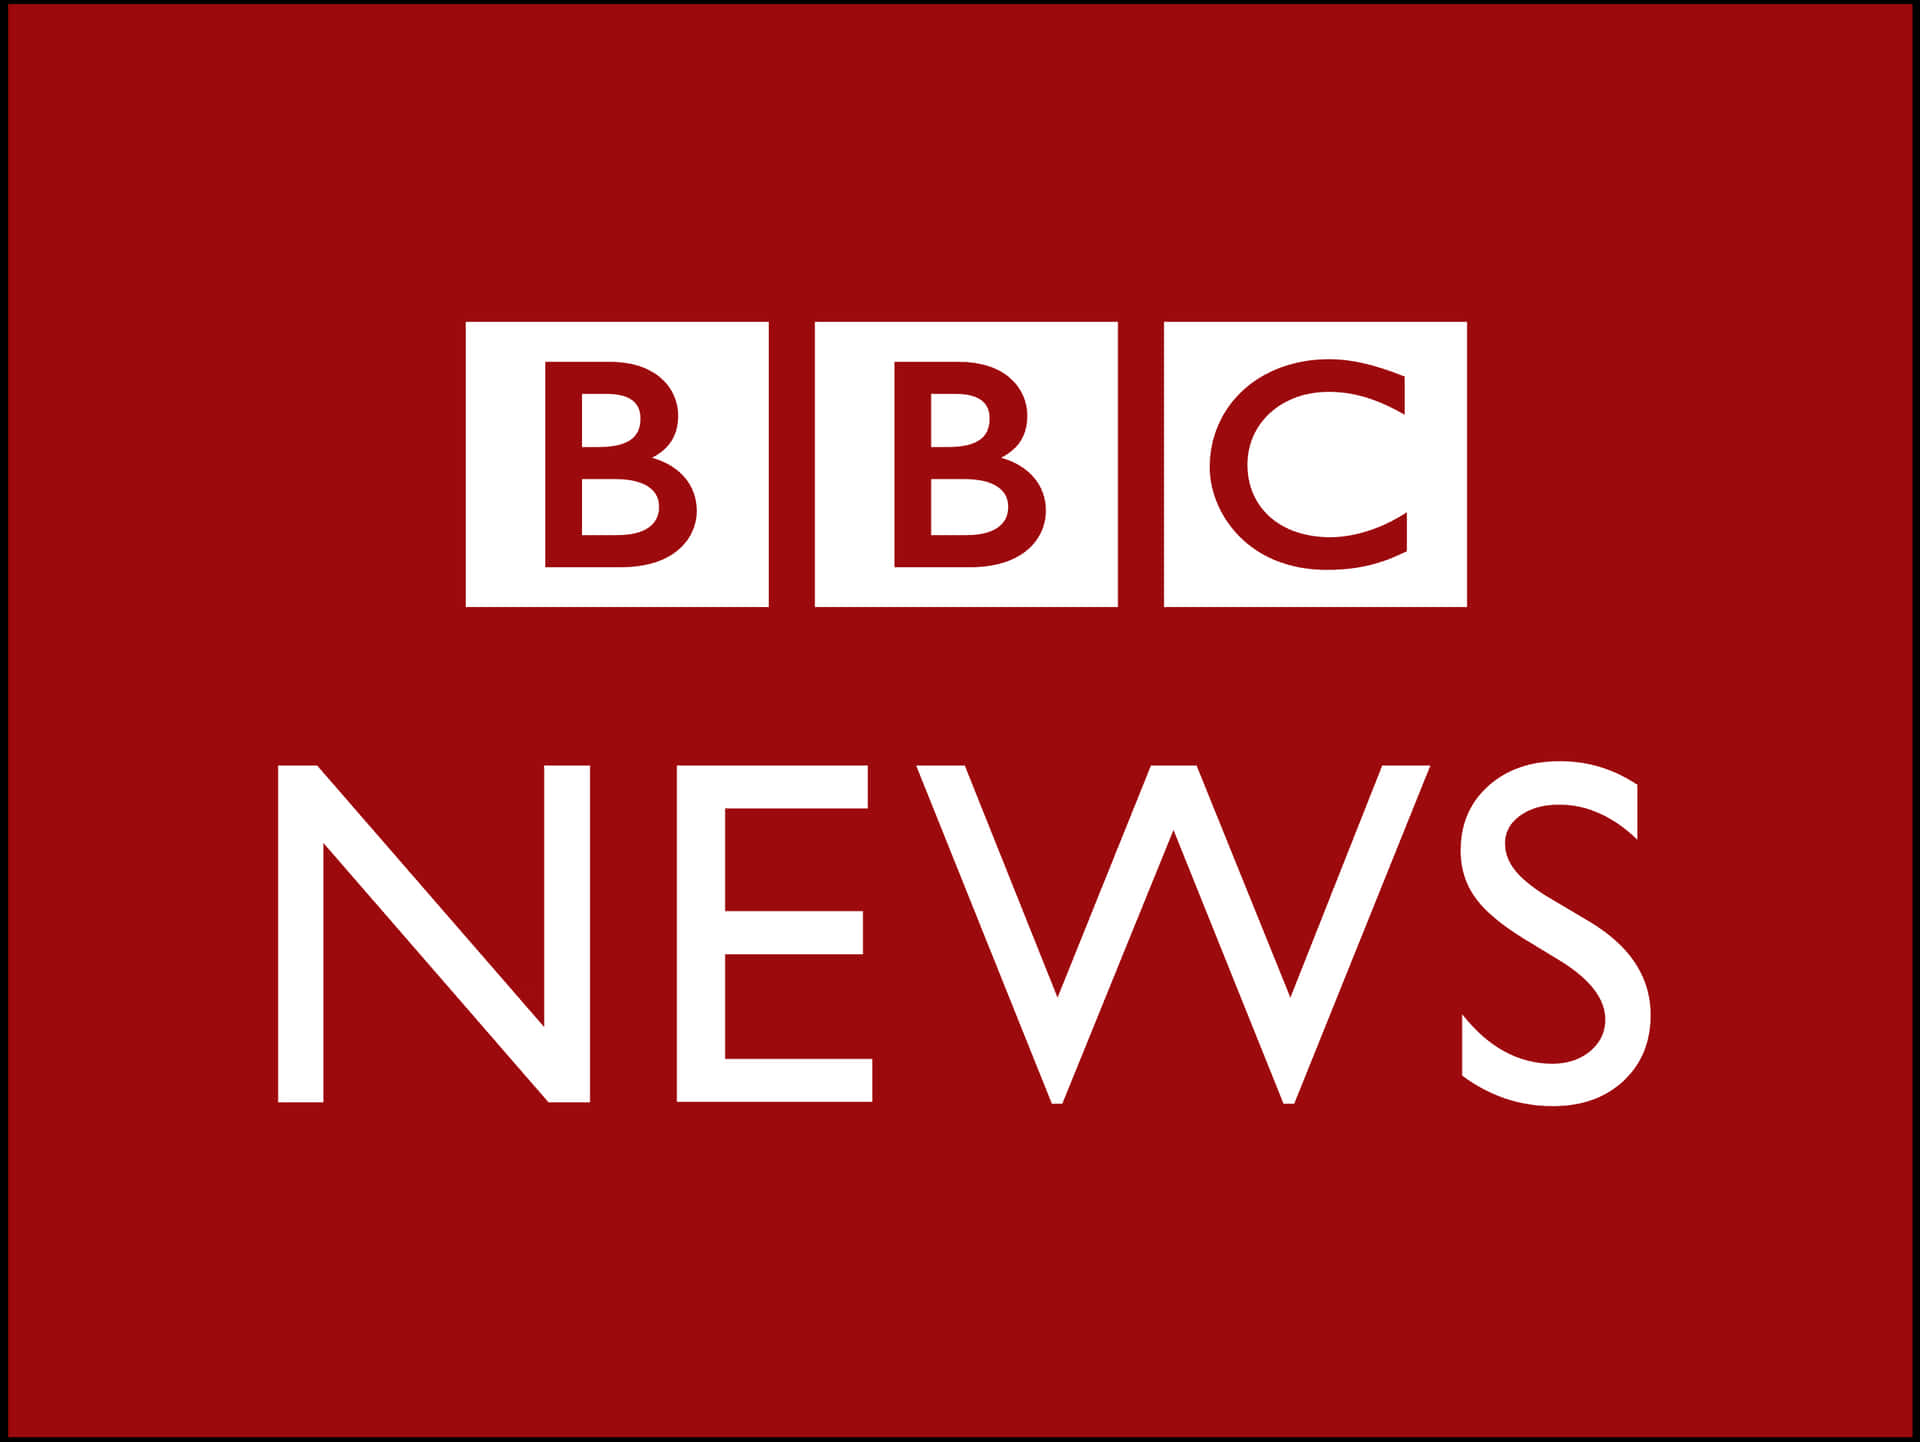 Imagendel Logotipo De Bbc News En Color Granate.